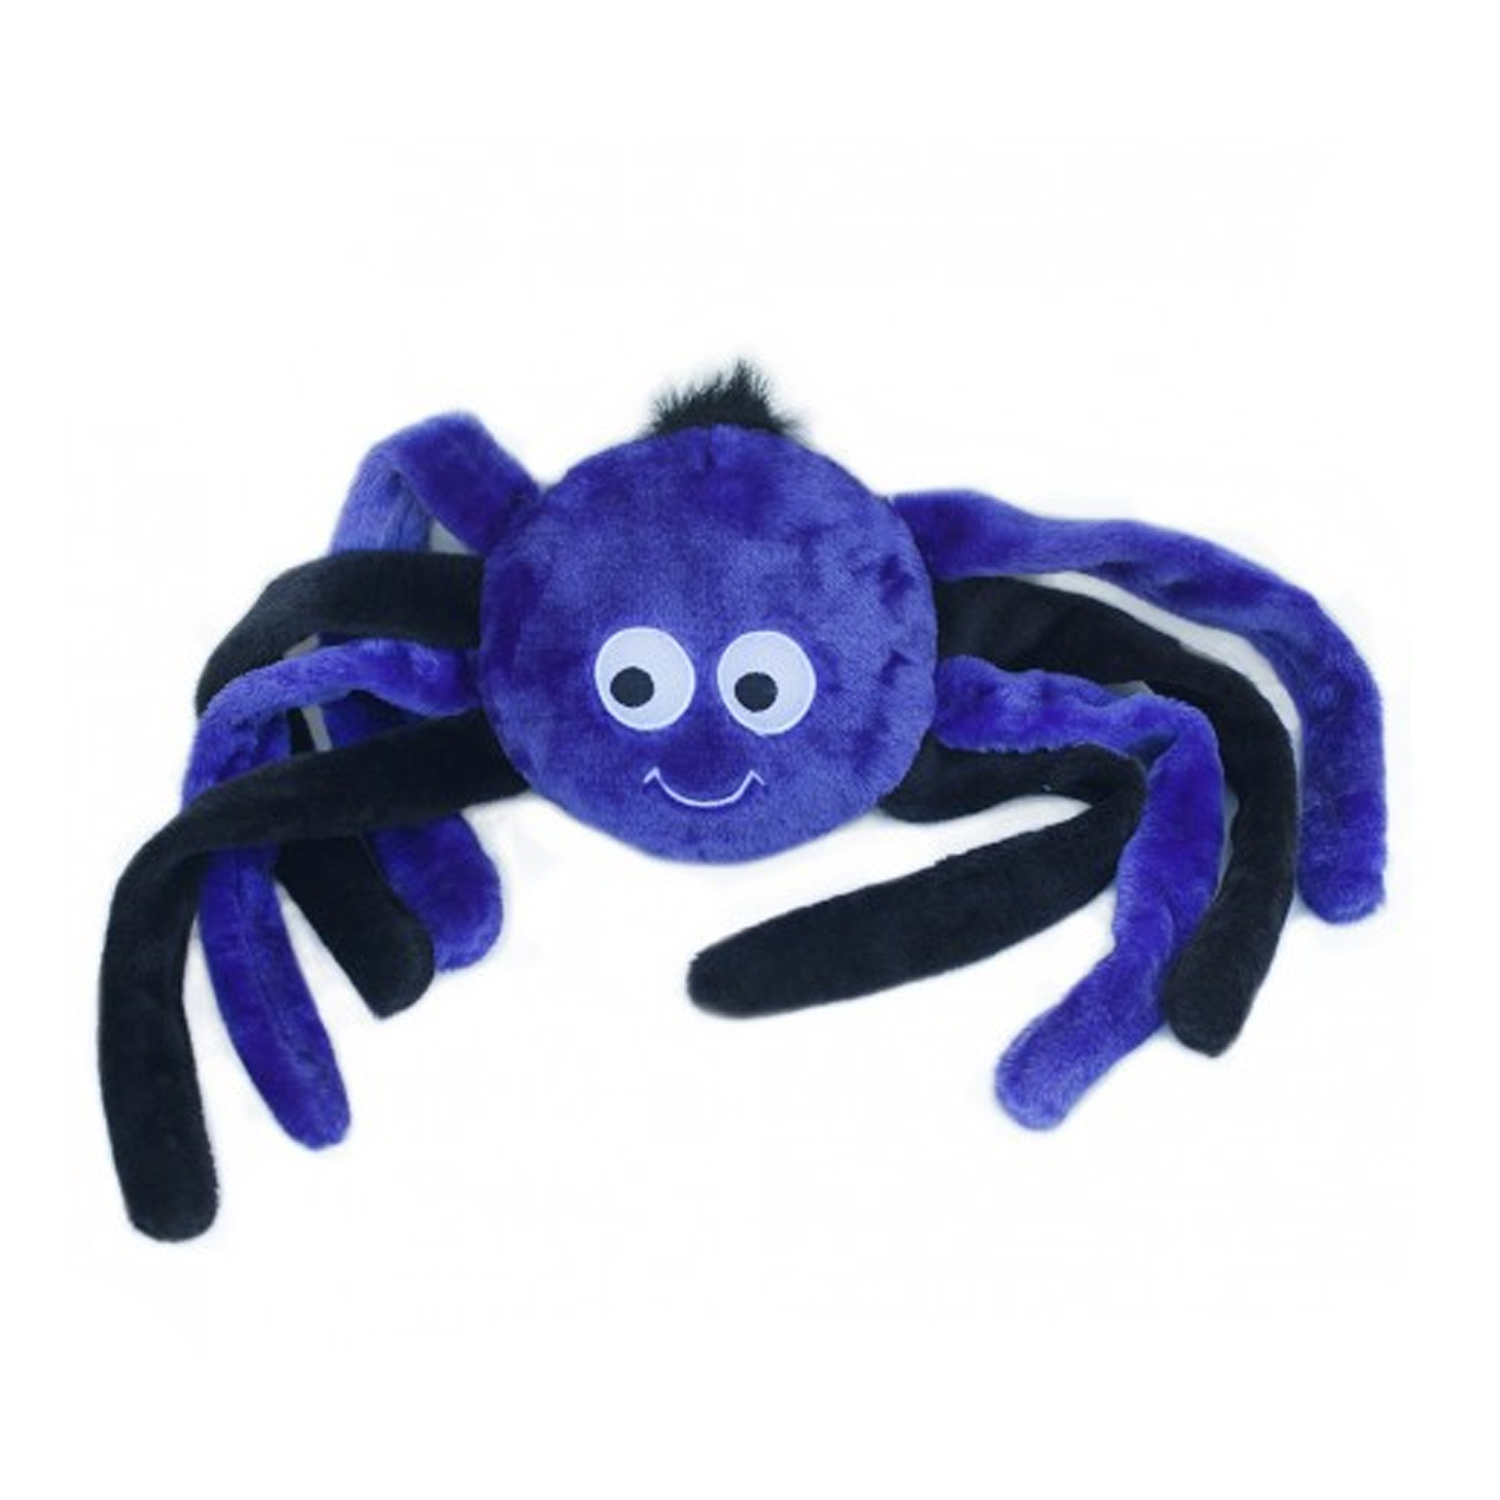 ZippyPaws Halloween Grunterz Dog Toy - Purple Spider